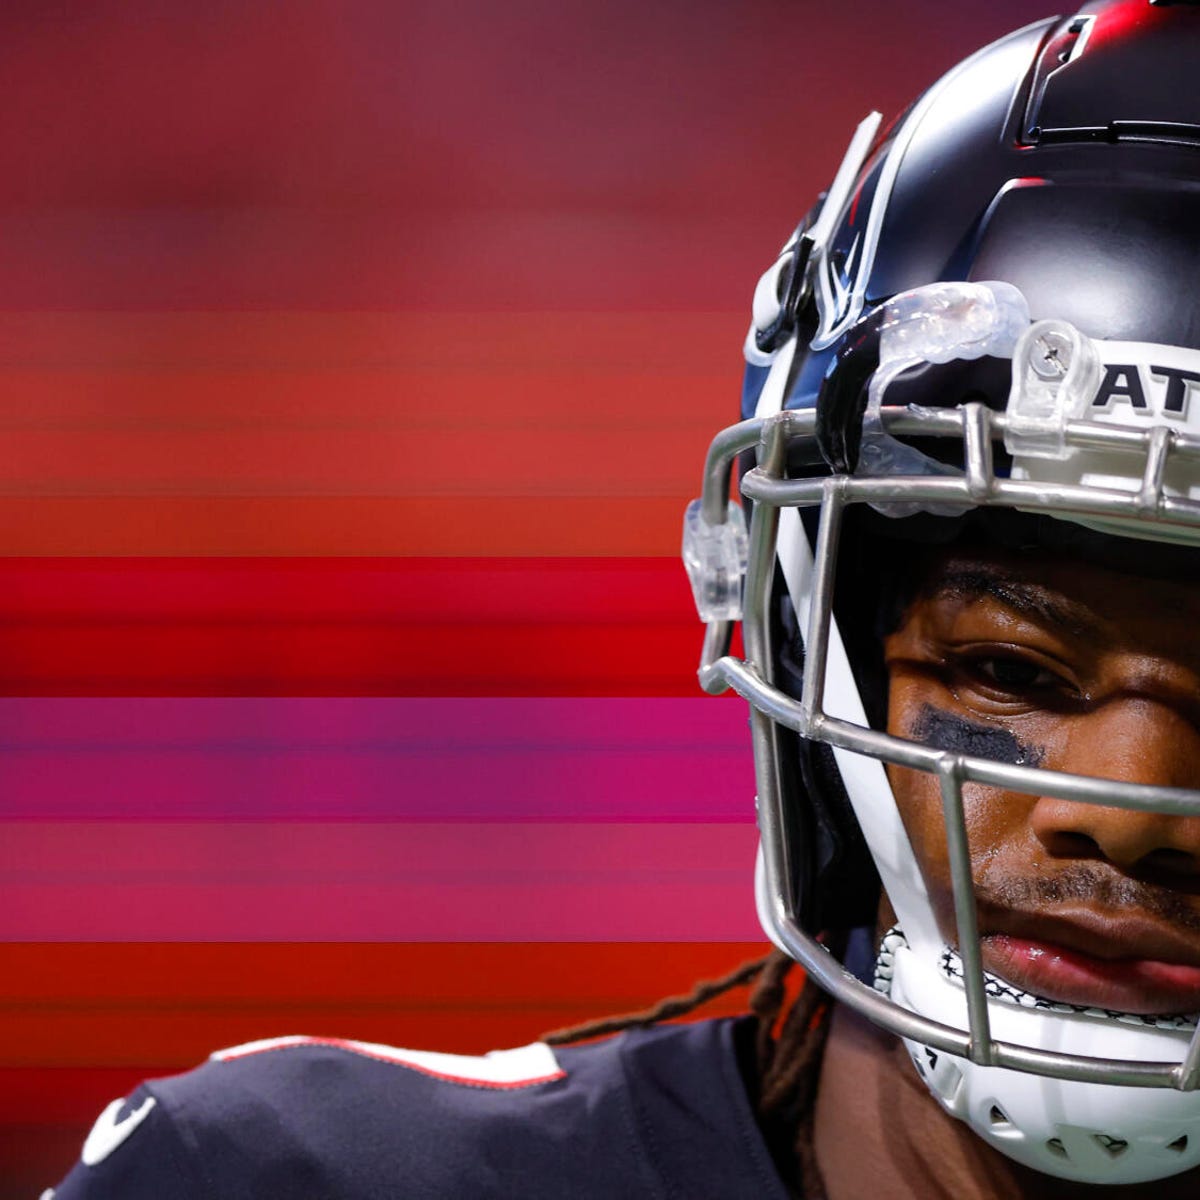 New England Patriots vs. Atlanta Falcons: How to watch Thursday